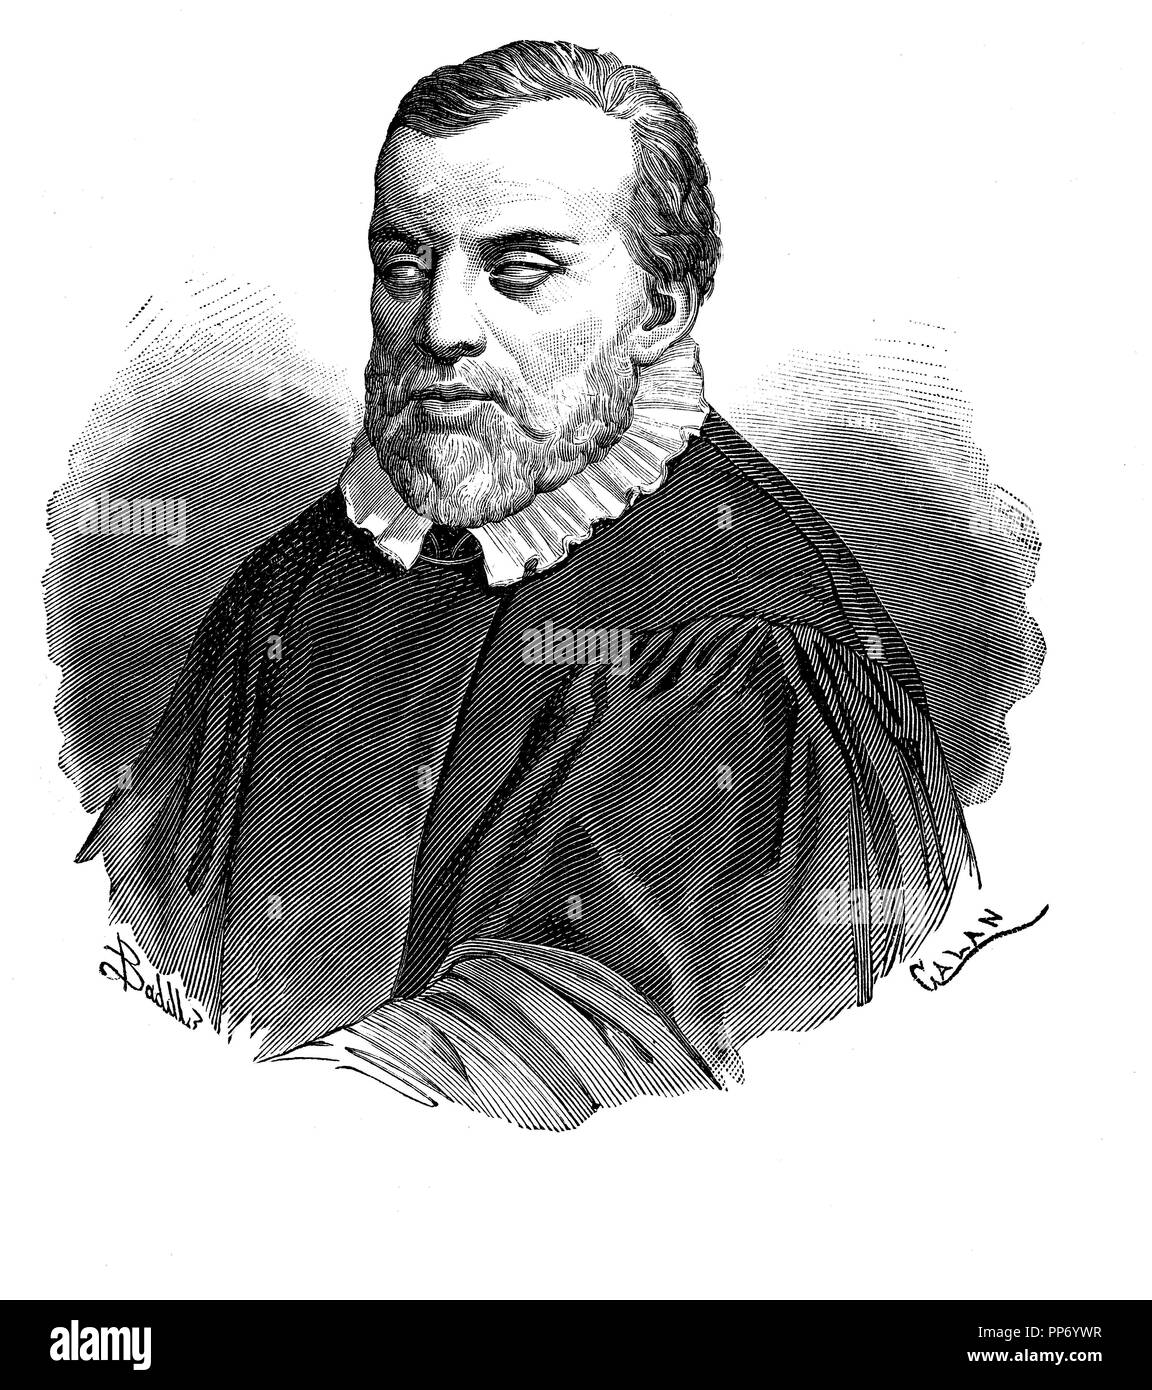 Francisco de Salinas (1513-1590). Músico, compositor y humanista castellano, ciego desde su infancia. Grabado de 1879. Stock Photo